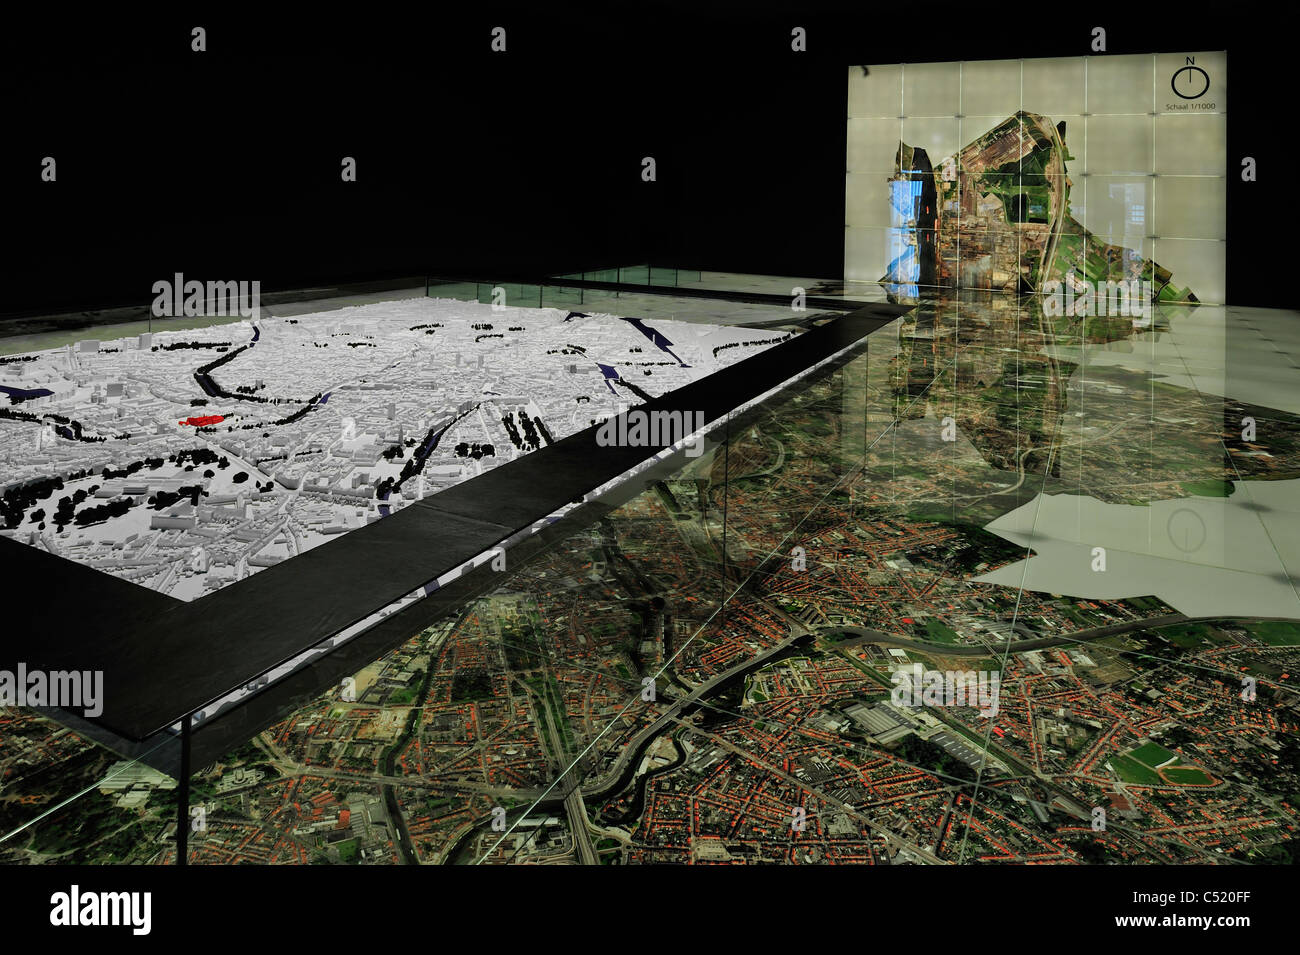 Maquette et photo aérienne de la ville de Gand STAM, le musée de la ville de Gand, Belgique Banque D'Images